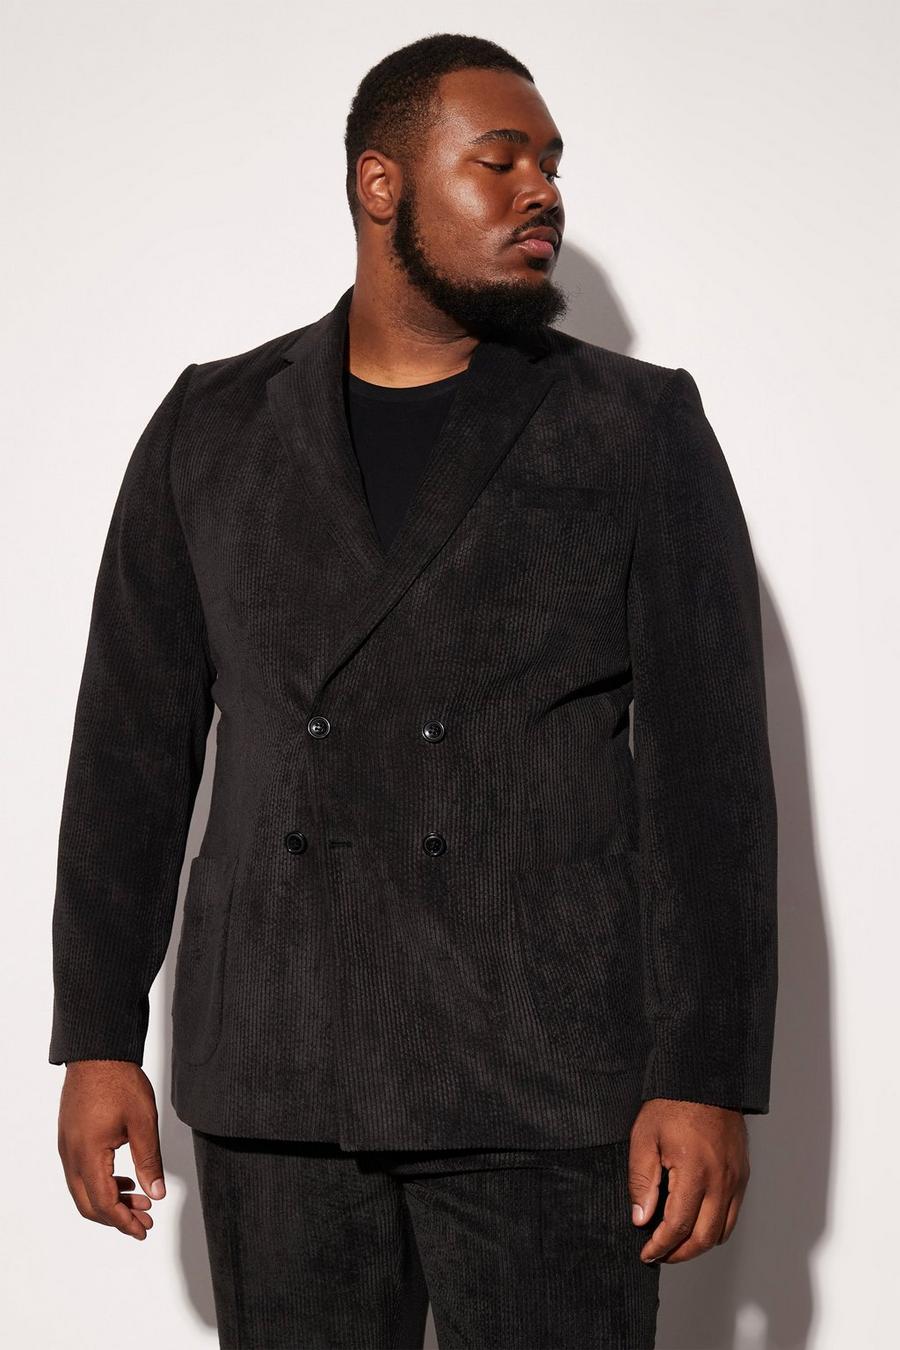 שחור negro ז'קט חליפה קורדרוי בגזרה צרה עם דשים כפולים למידות גדולות